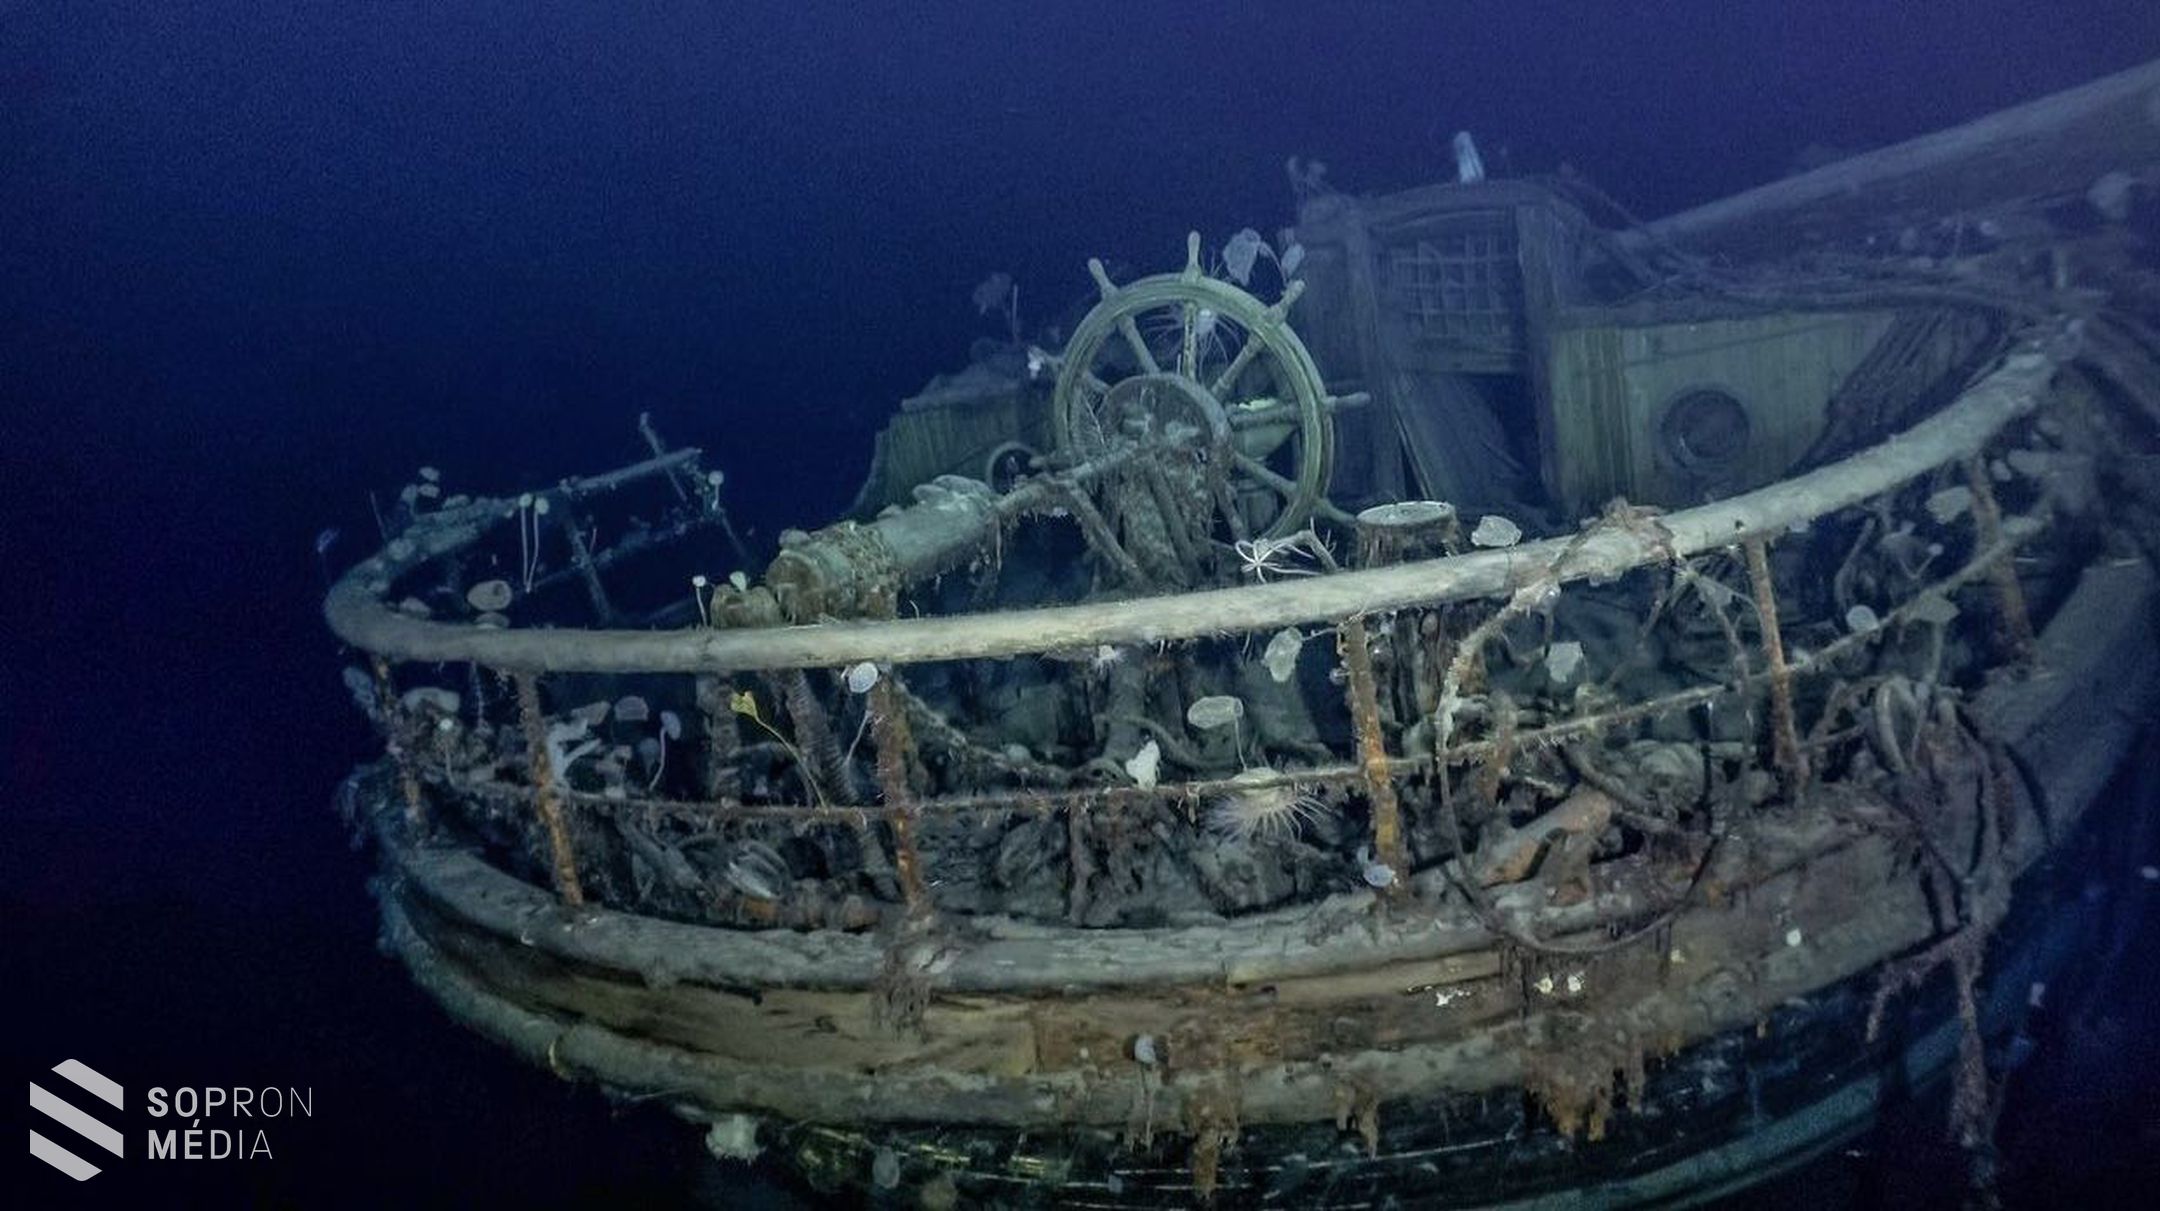 Kutatók megtaláltak egy több mint 100 éve elsüllyedt hajót az Antarktisz közelében! Soproni fotós is részt vett az expedícióban